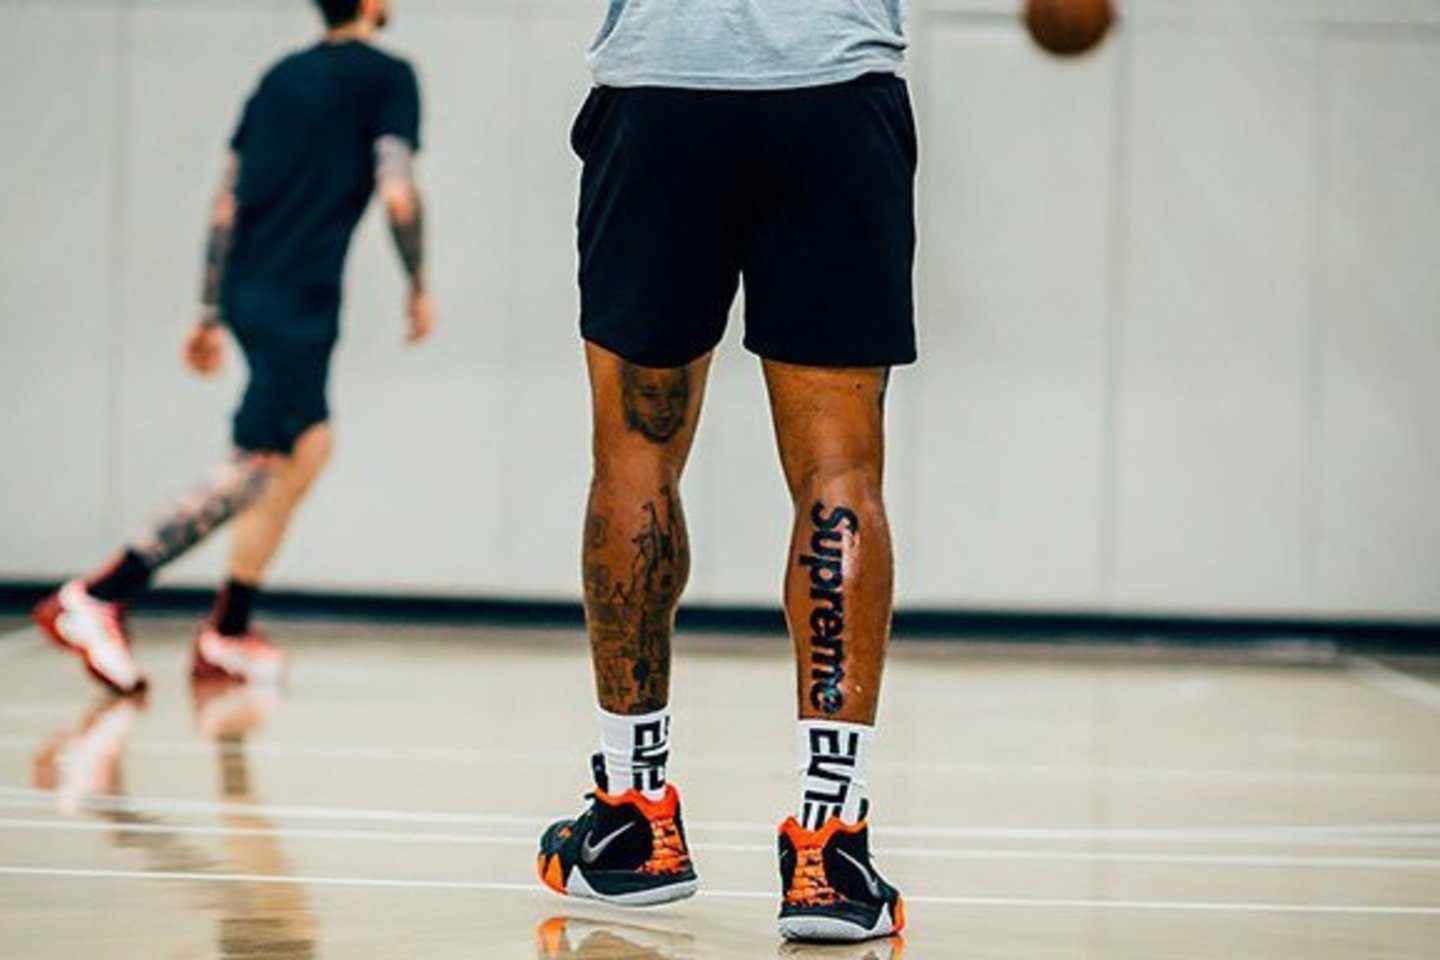  NBA žaidėjas J.R.Smithas sugalvojo išsitatuiruoti kompanijos pavadinimą ant kojos<br> Scanpix.com